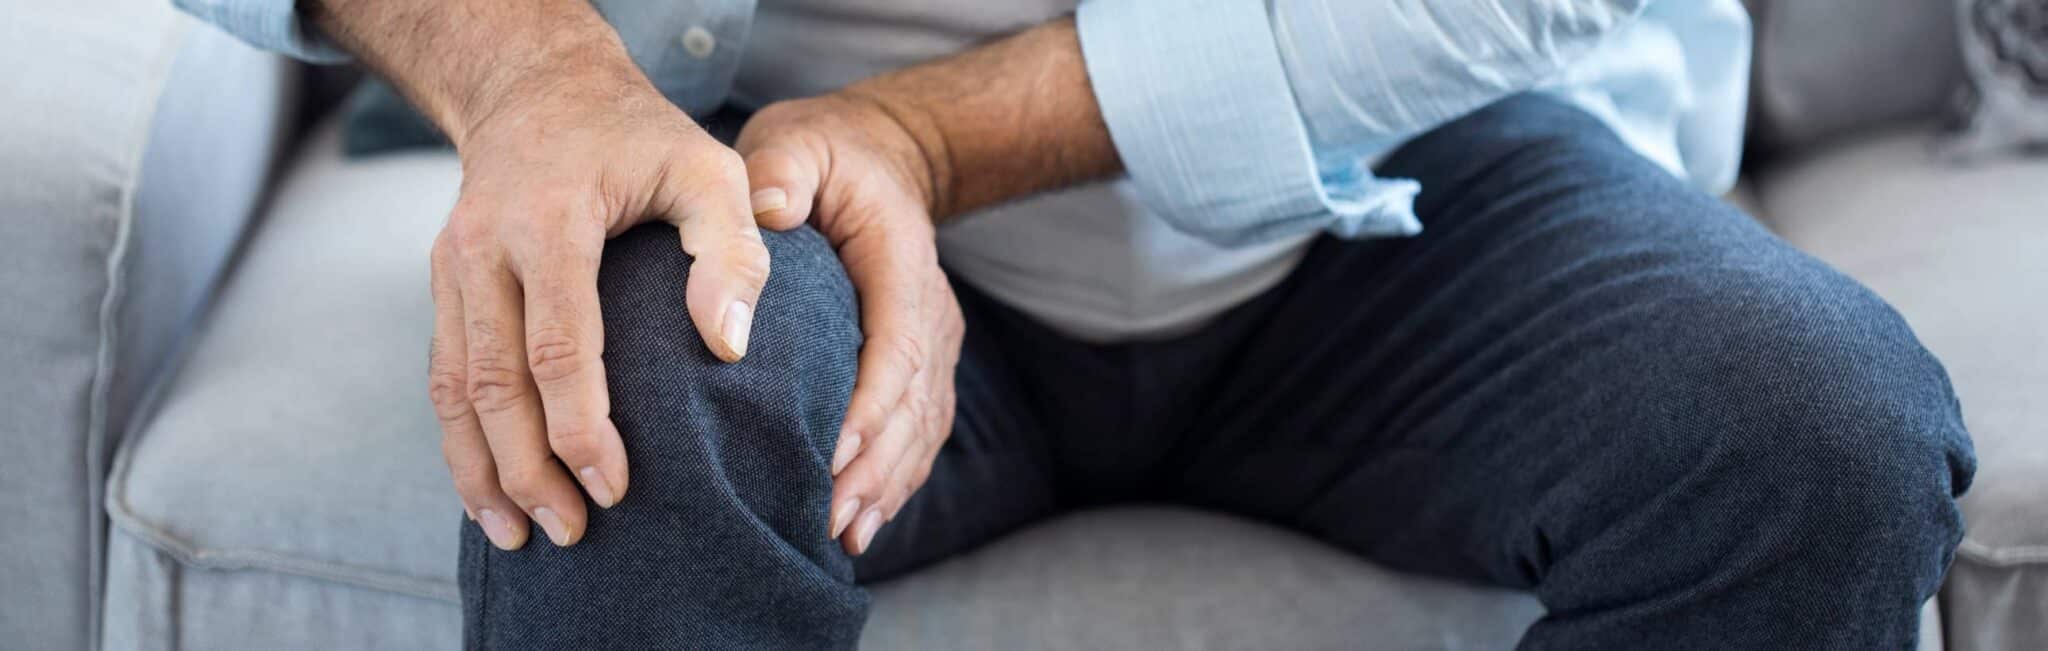 Comment éviter l’arthrose ? | Dr Paillard | Paris